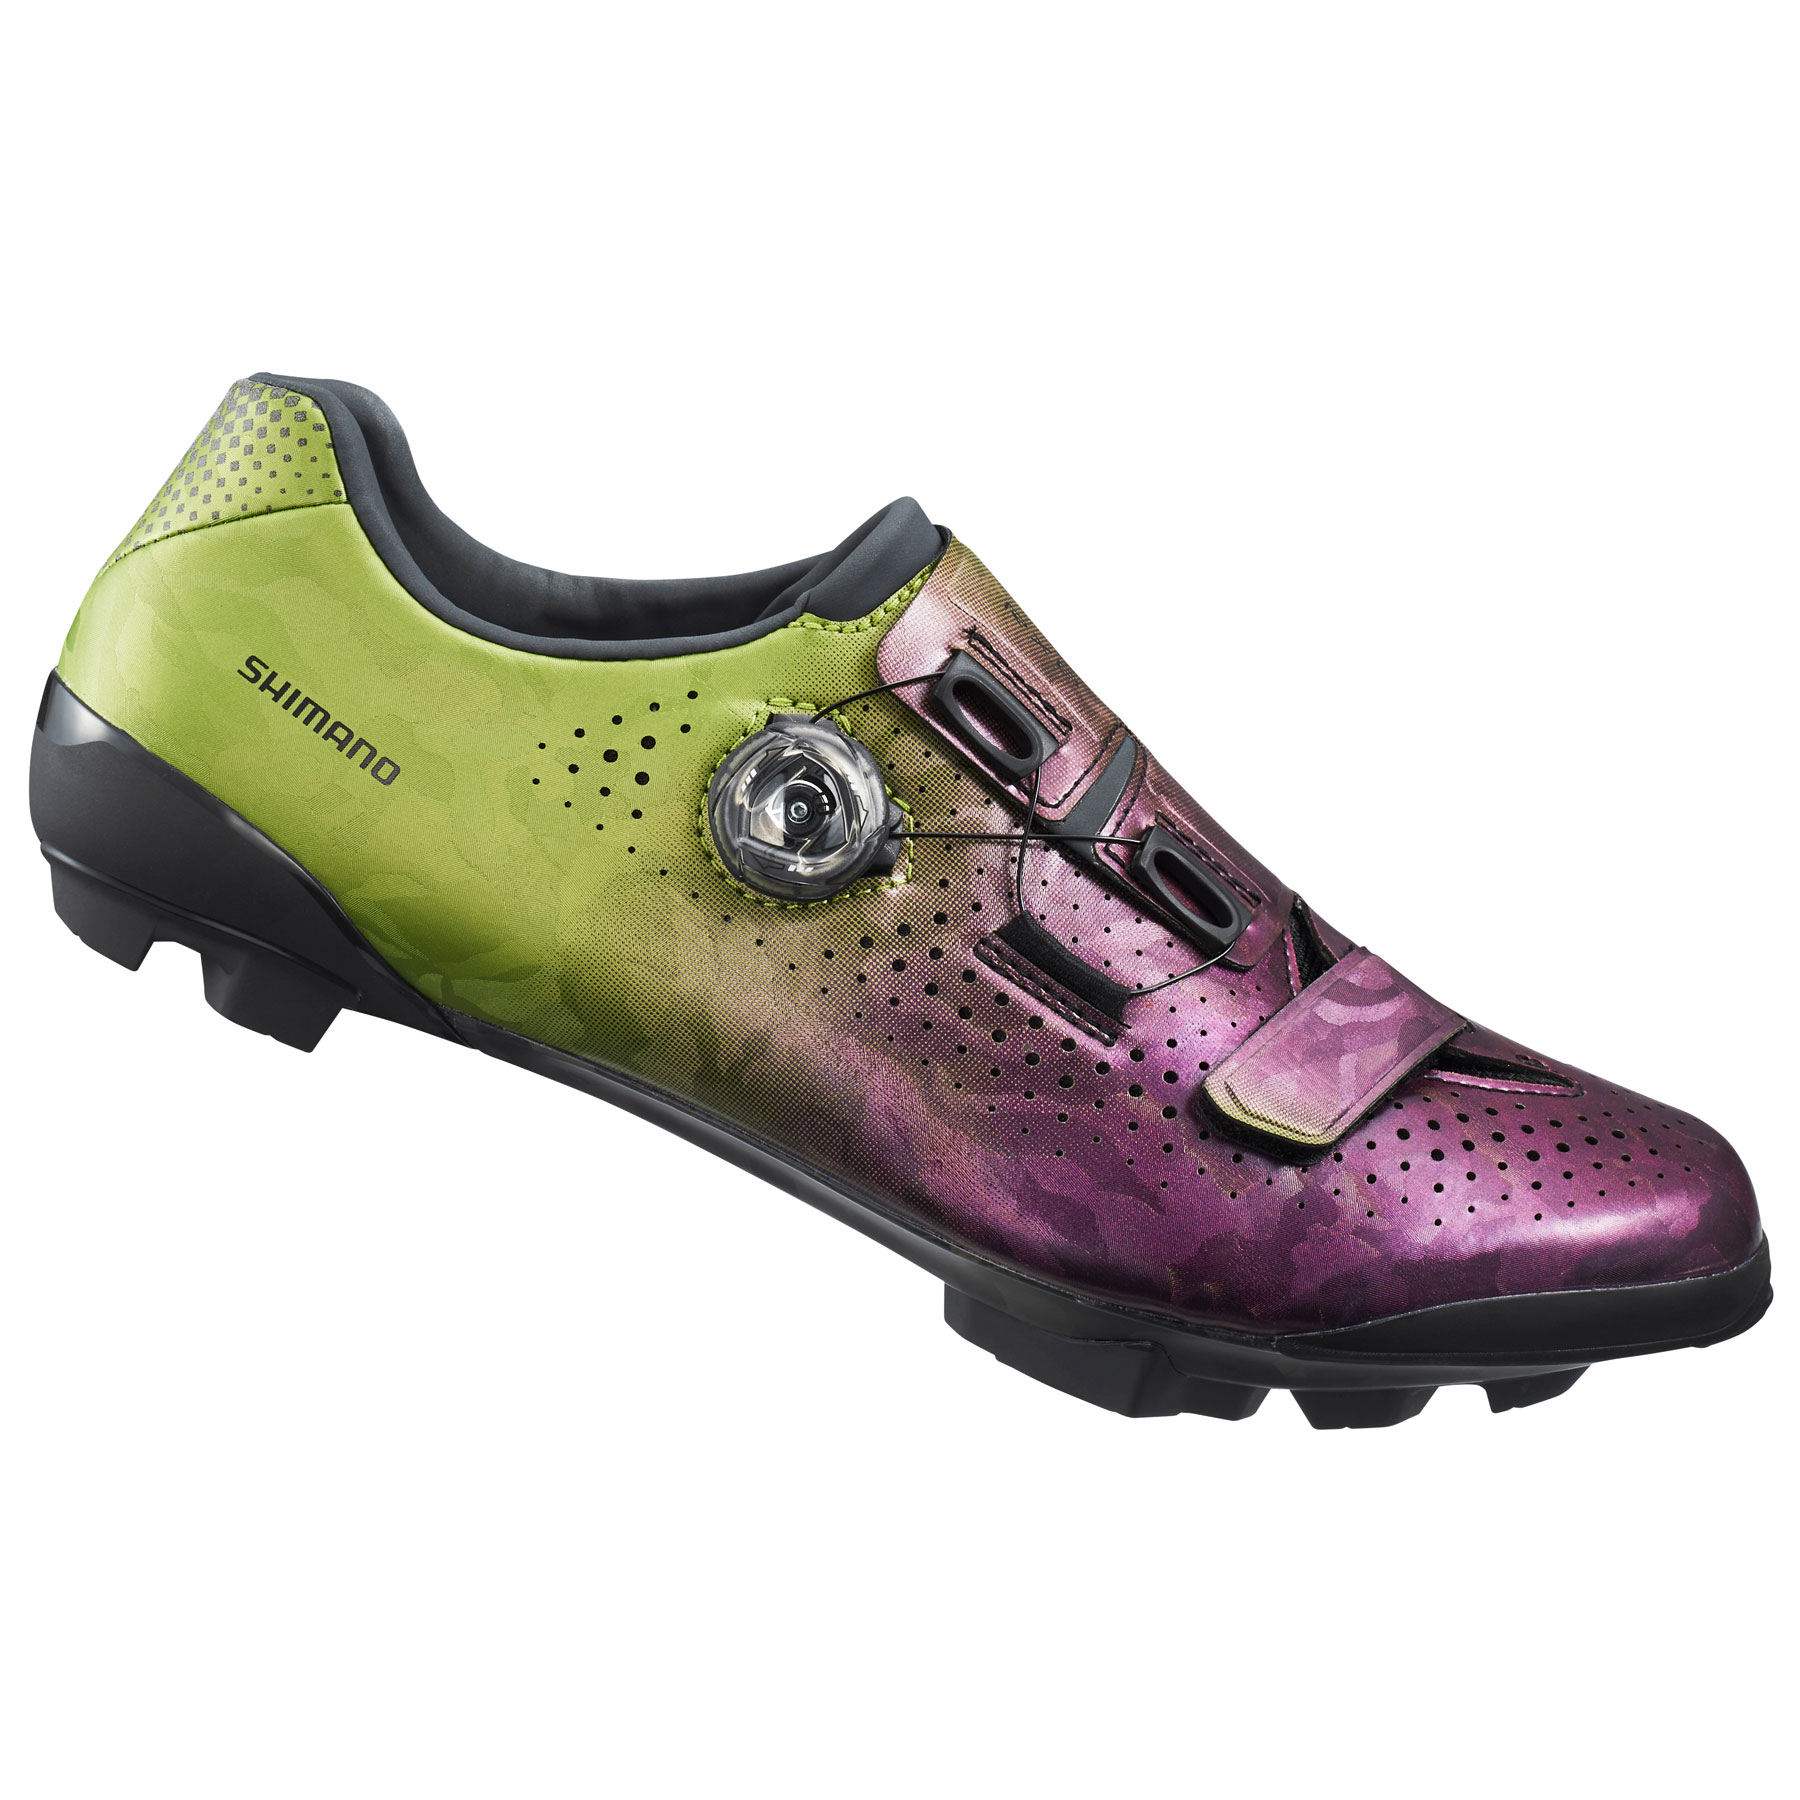 Produktbild von Shimano SH-RX800 Gravel Bike Schuhe Herren - purple/green